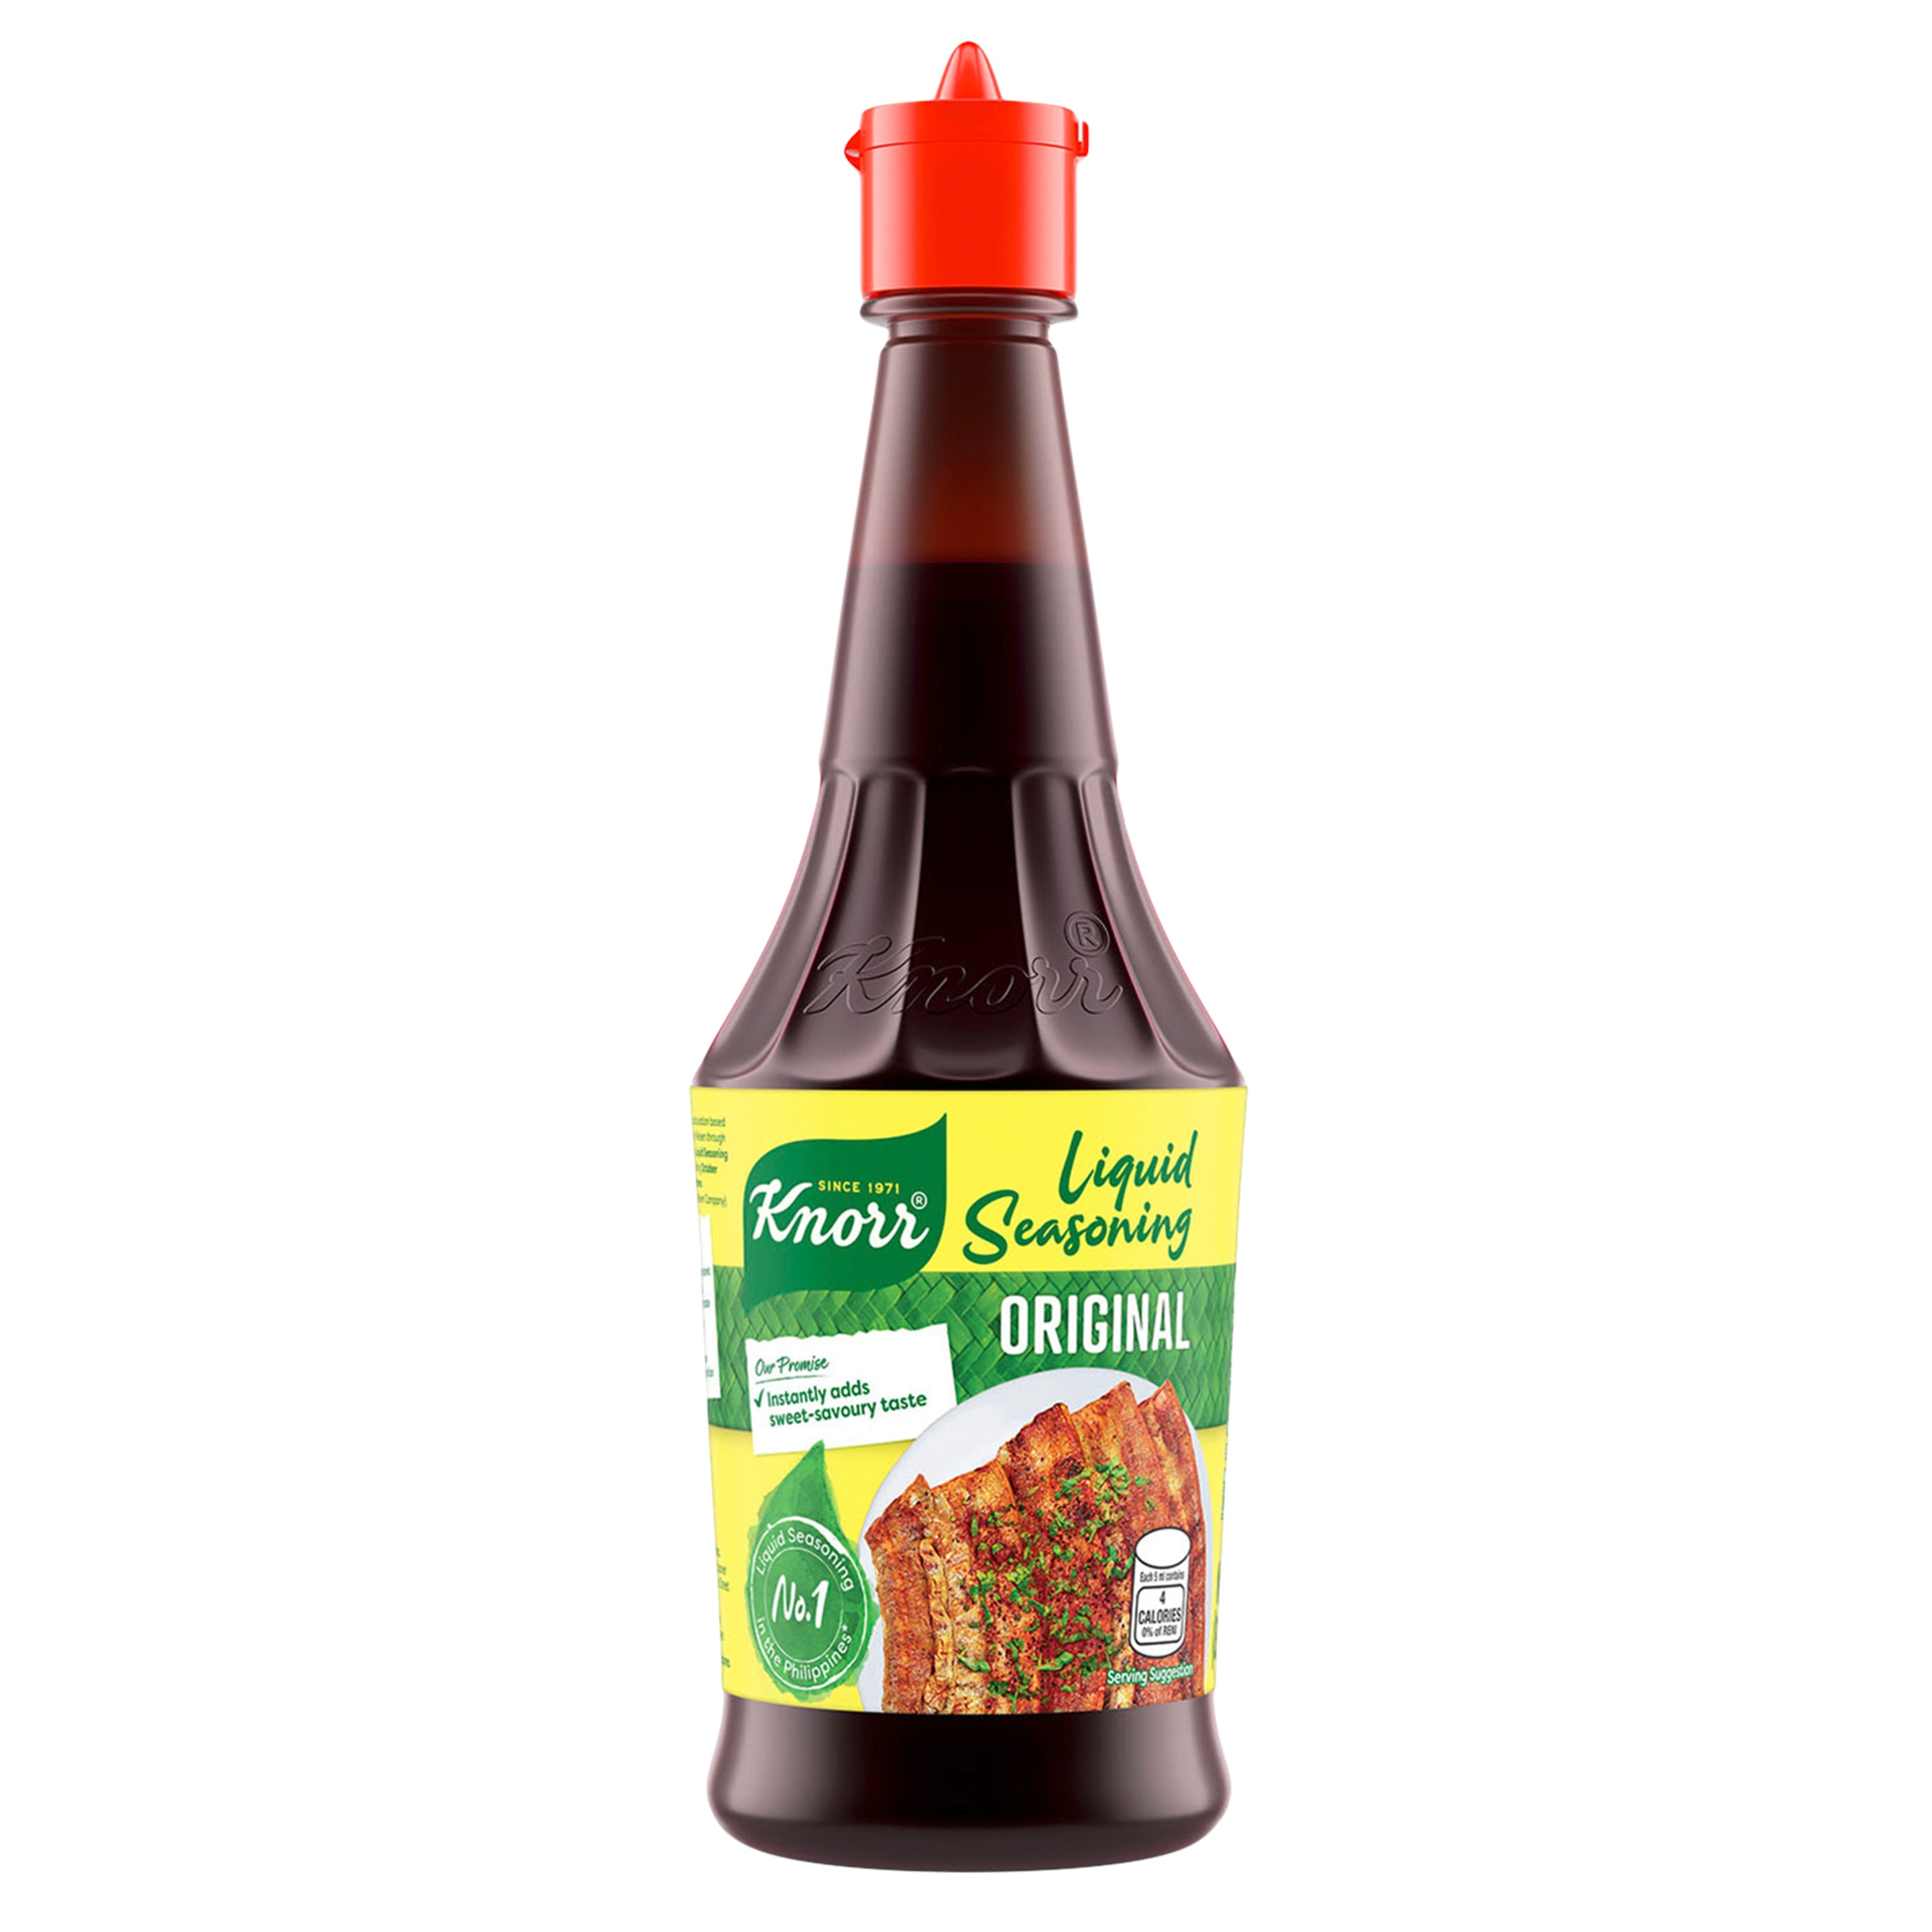 A bottle of Knorr Liquid Seasoning Original